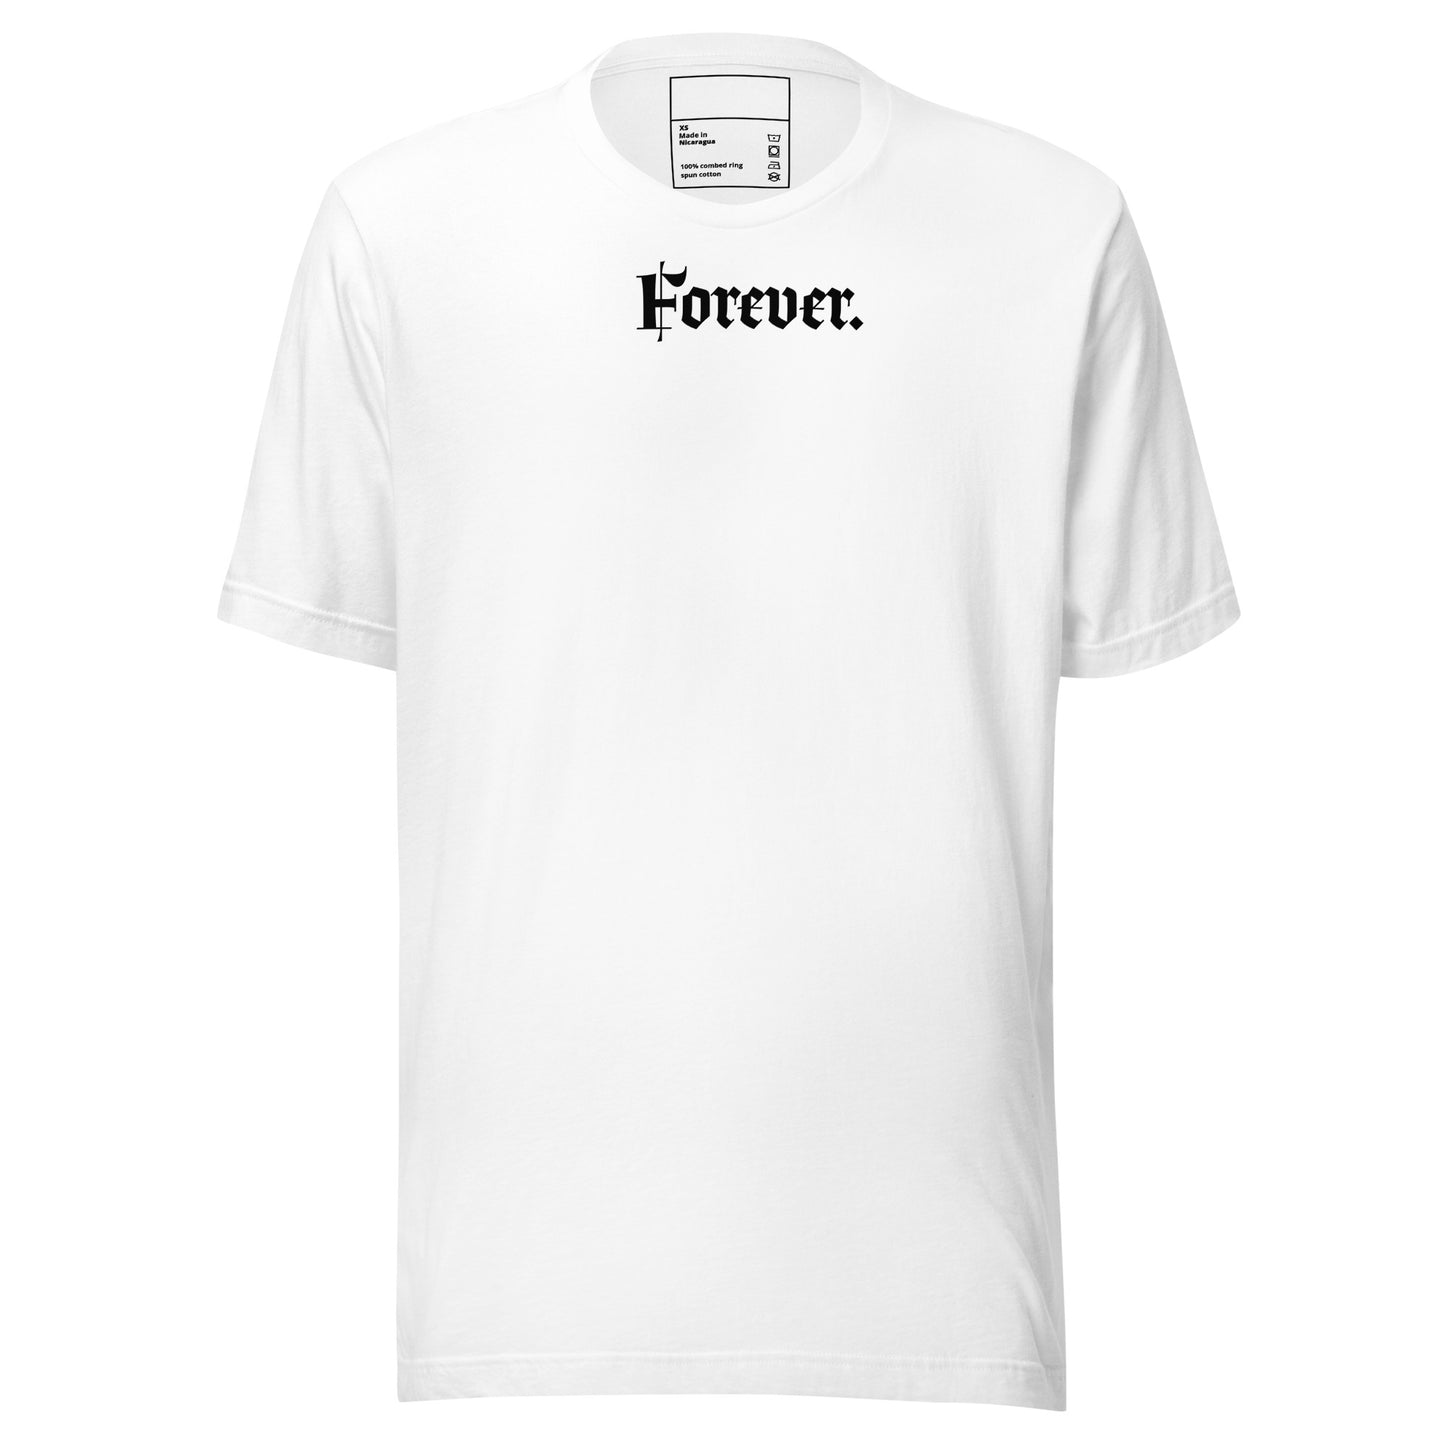 Forever Earth Unisex t-shirt